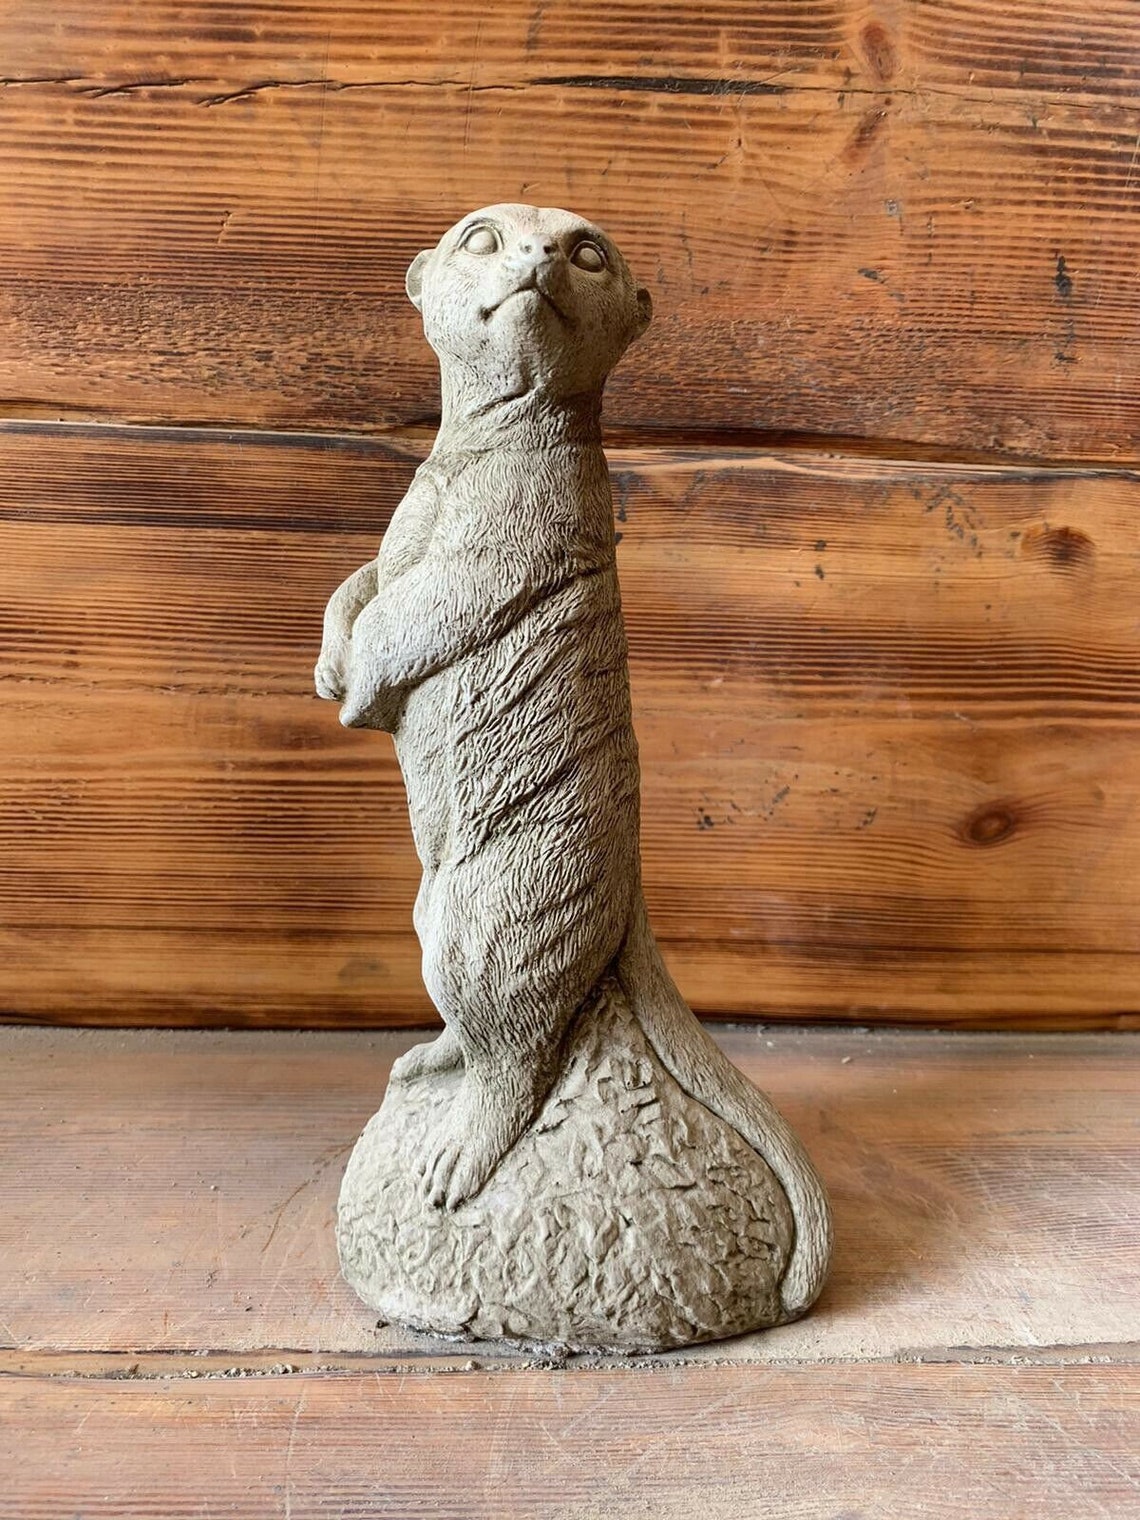 Stone Garden Standing Meerkat Statue Ornament | Etsy